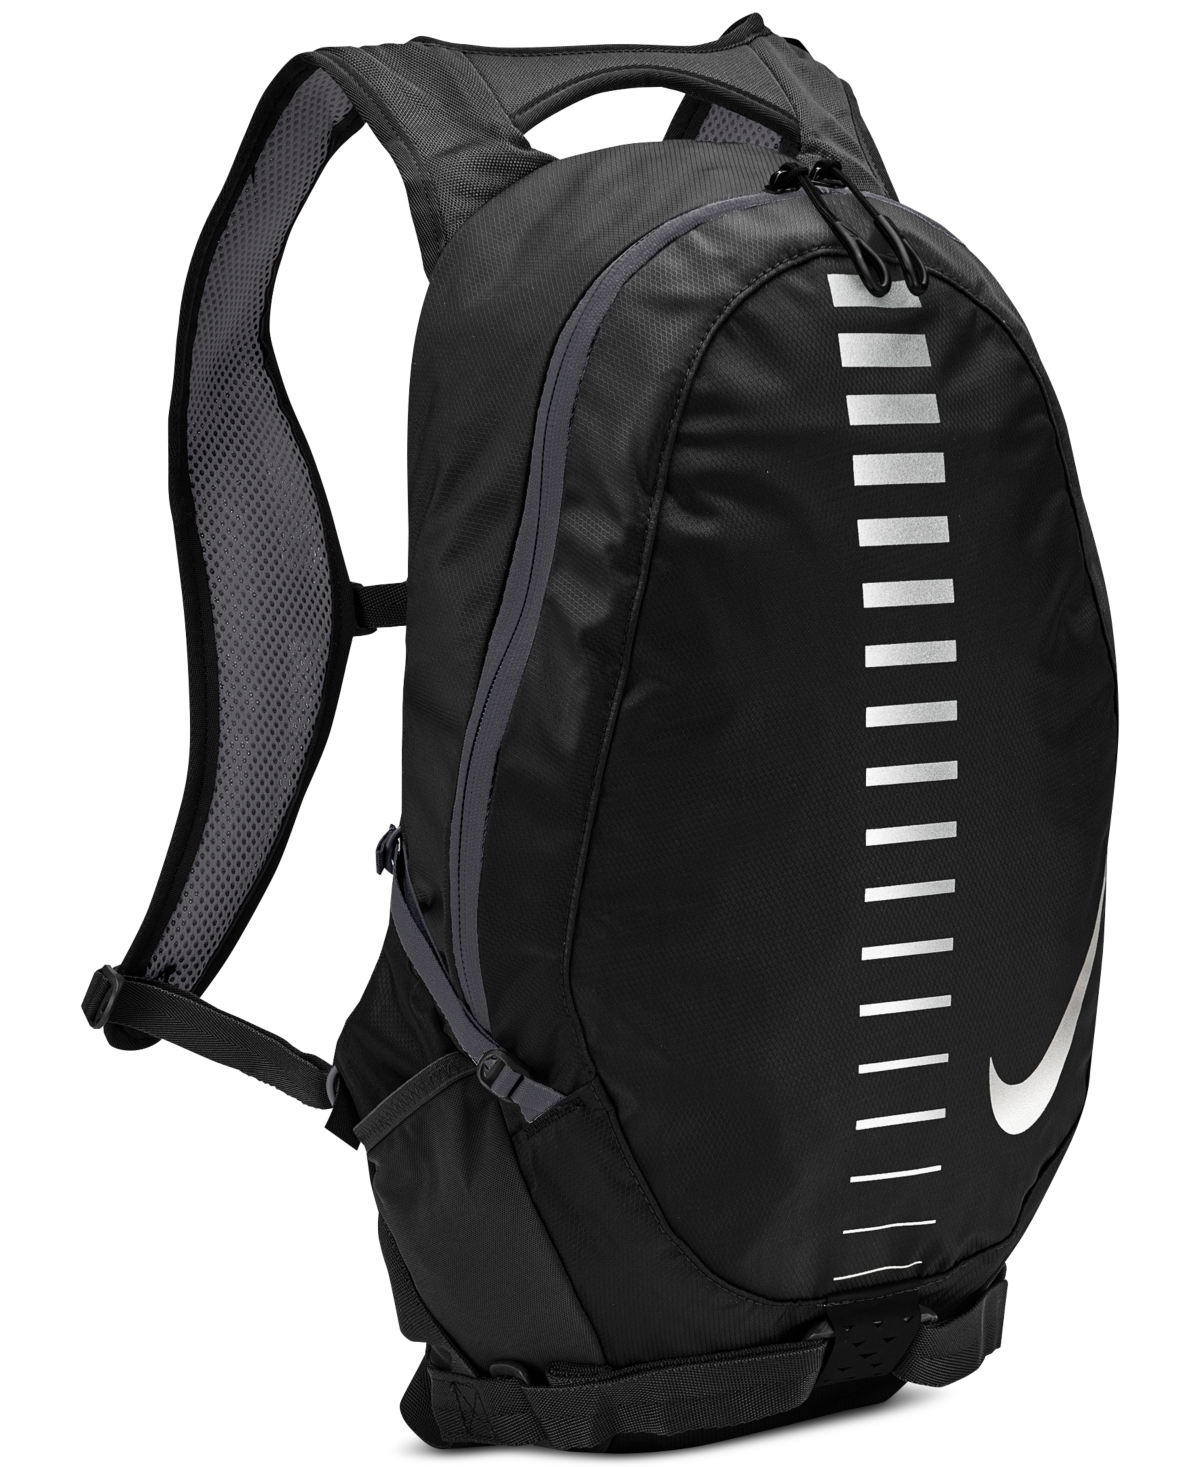 Commuter Backpack - Black/silver